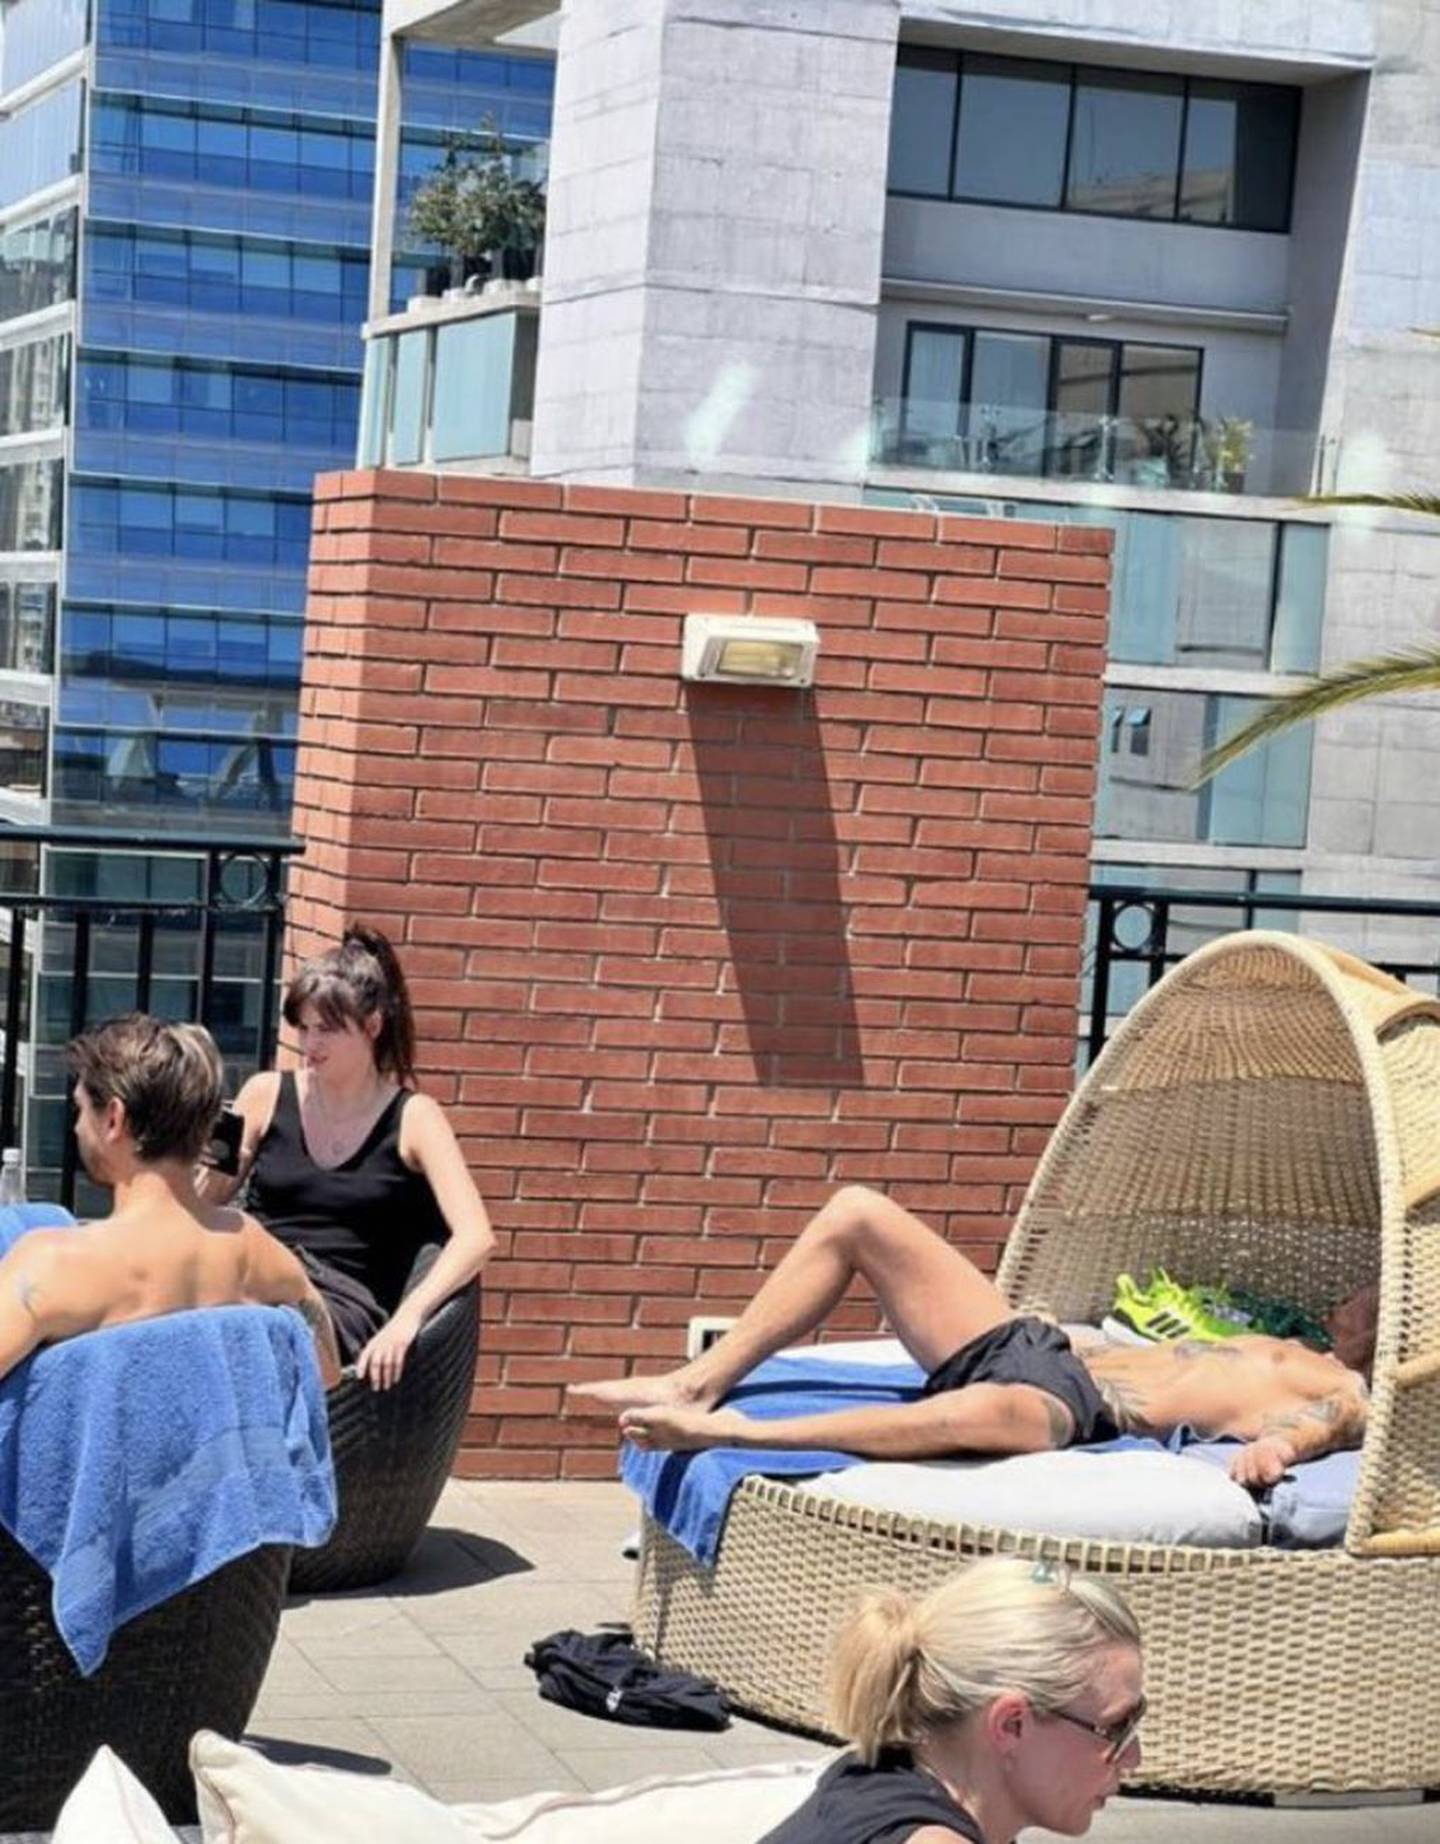 Harry Styles tomando sol en Chile, Vía Twitter